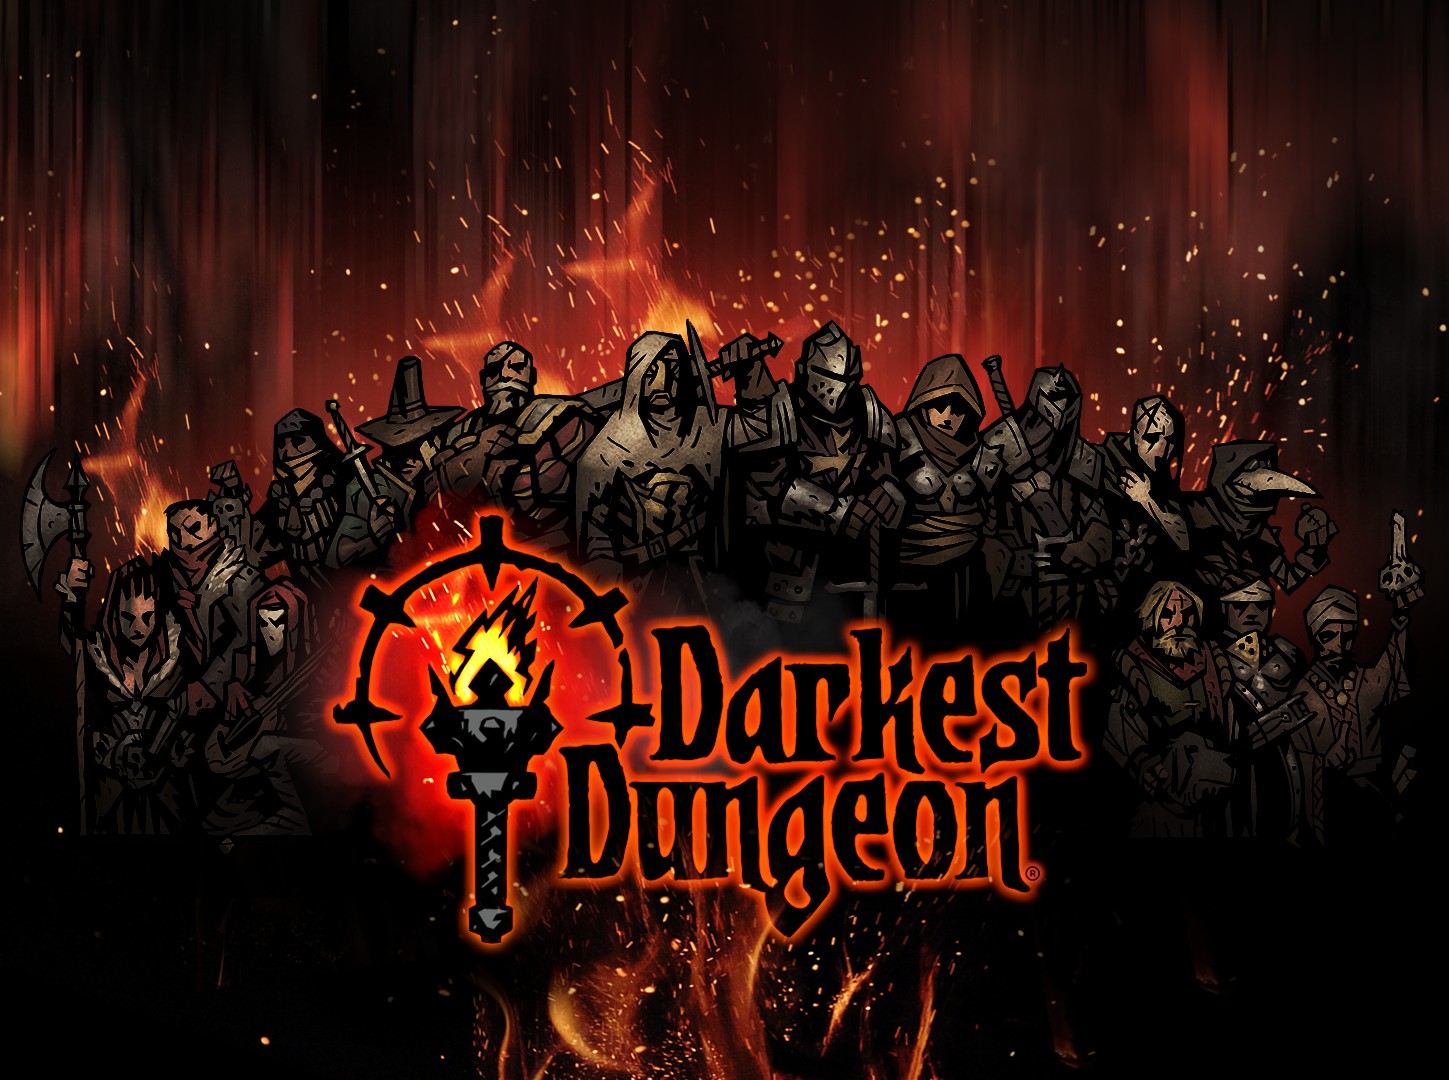 画像集 002 Darkest Dungeon 人気ゲーム実況グループ2bro の 弟者 さんがナレーション